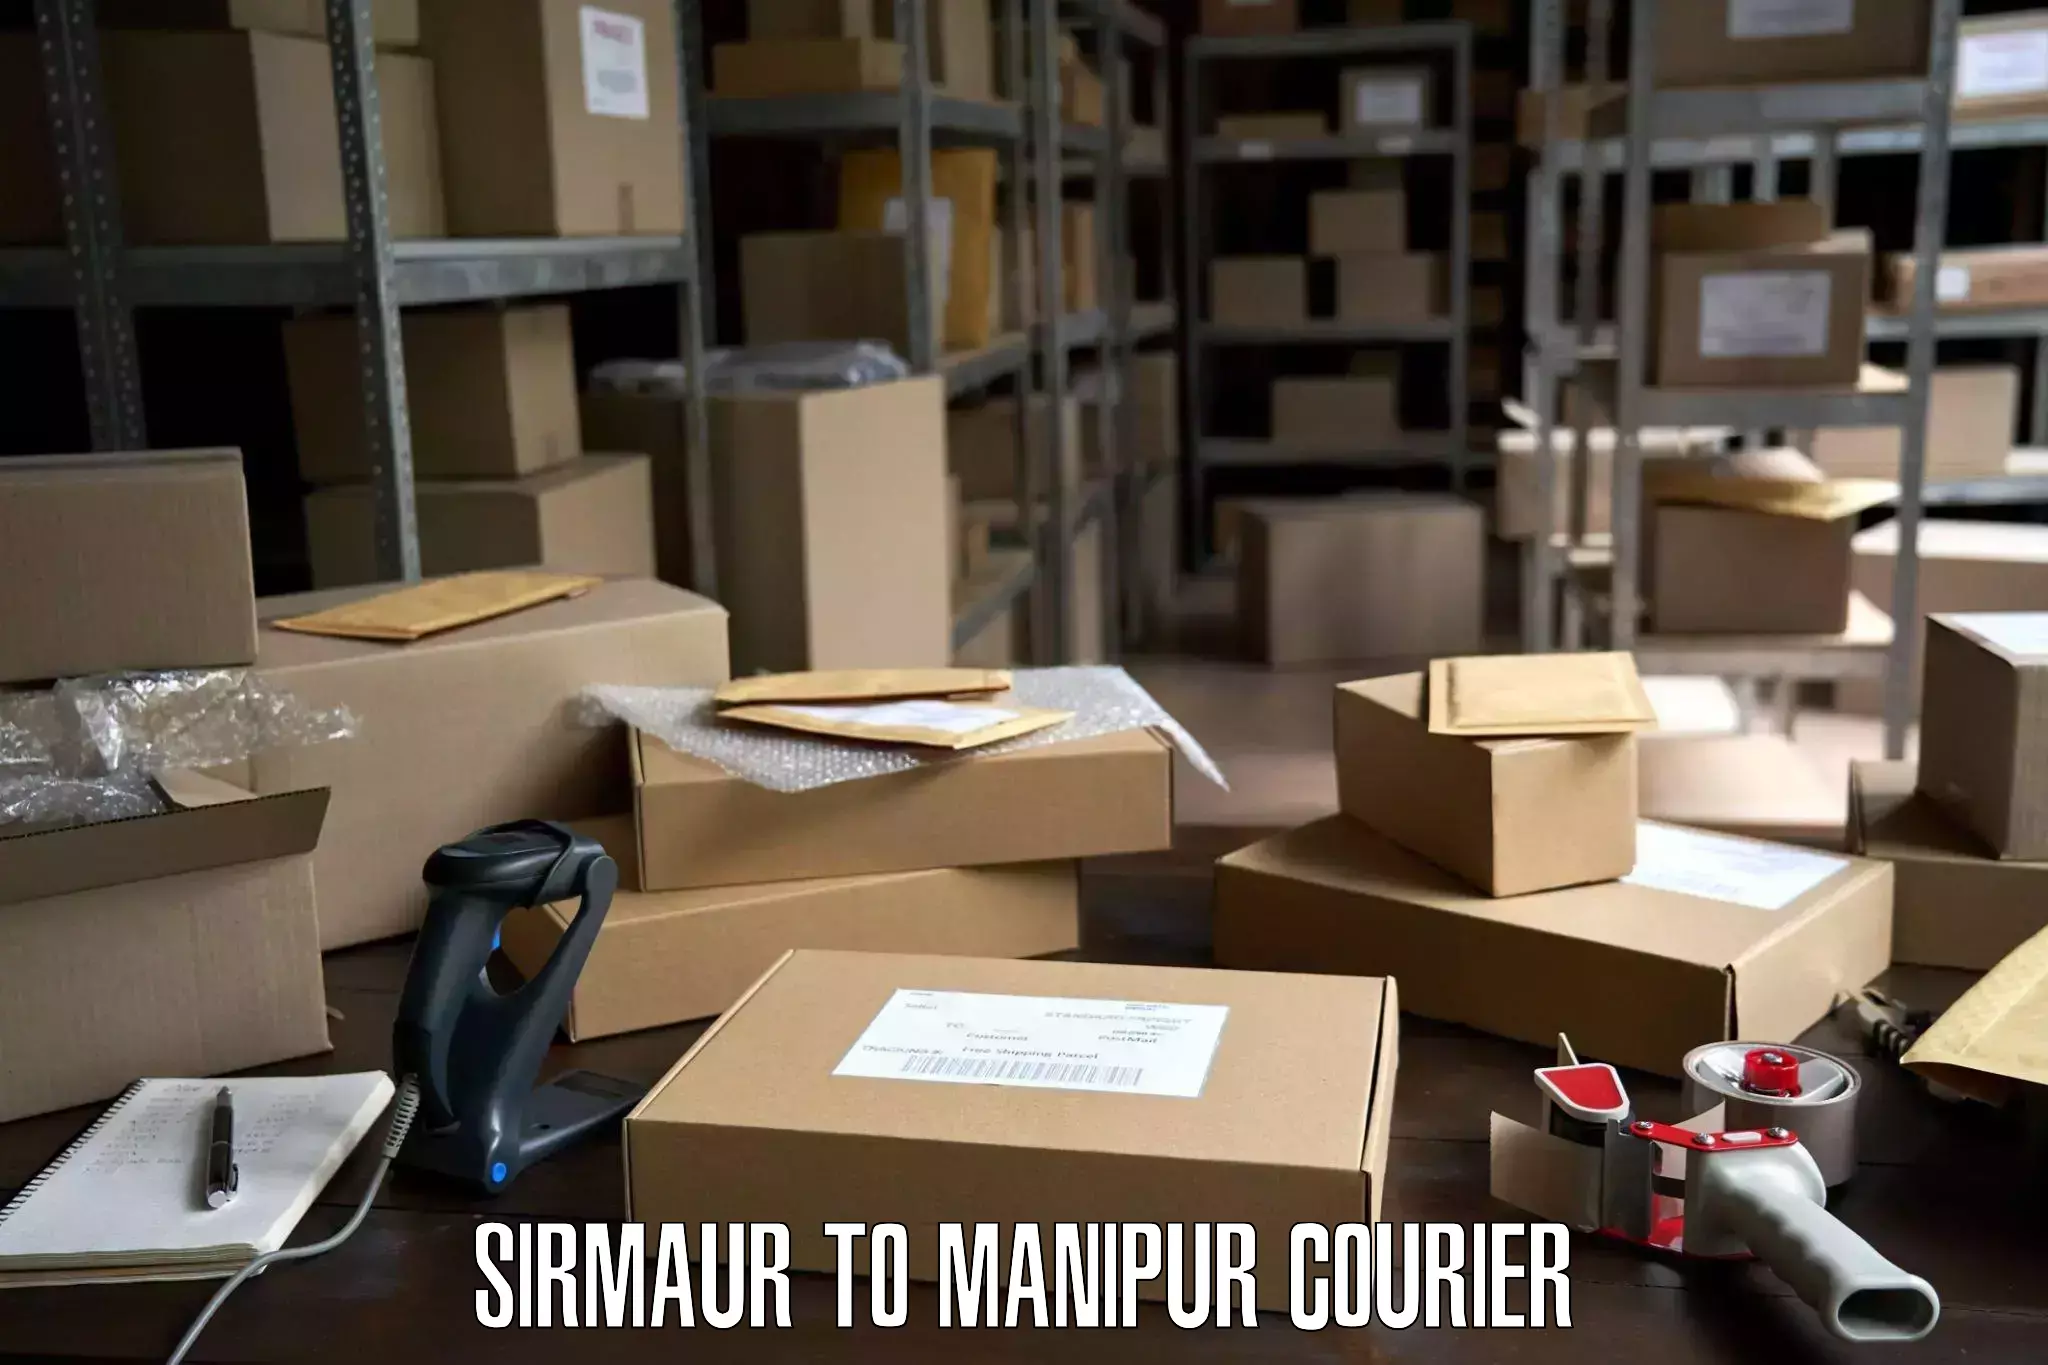 Furniture moving experts Sirmaur to Manipur